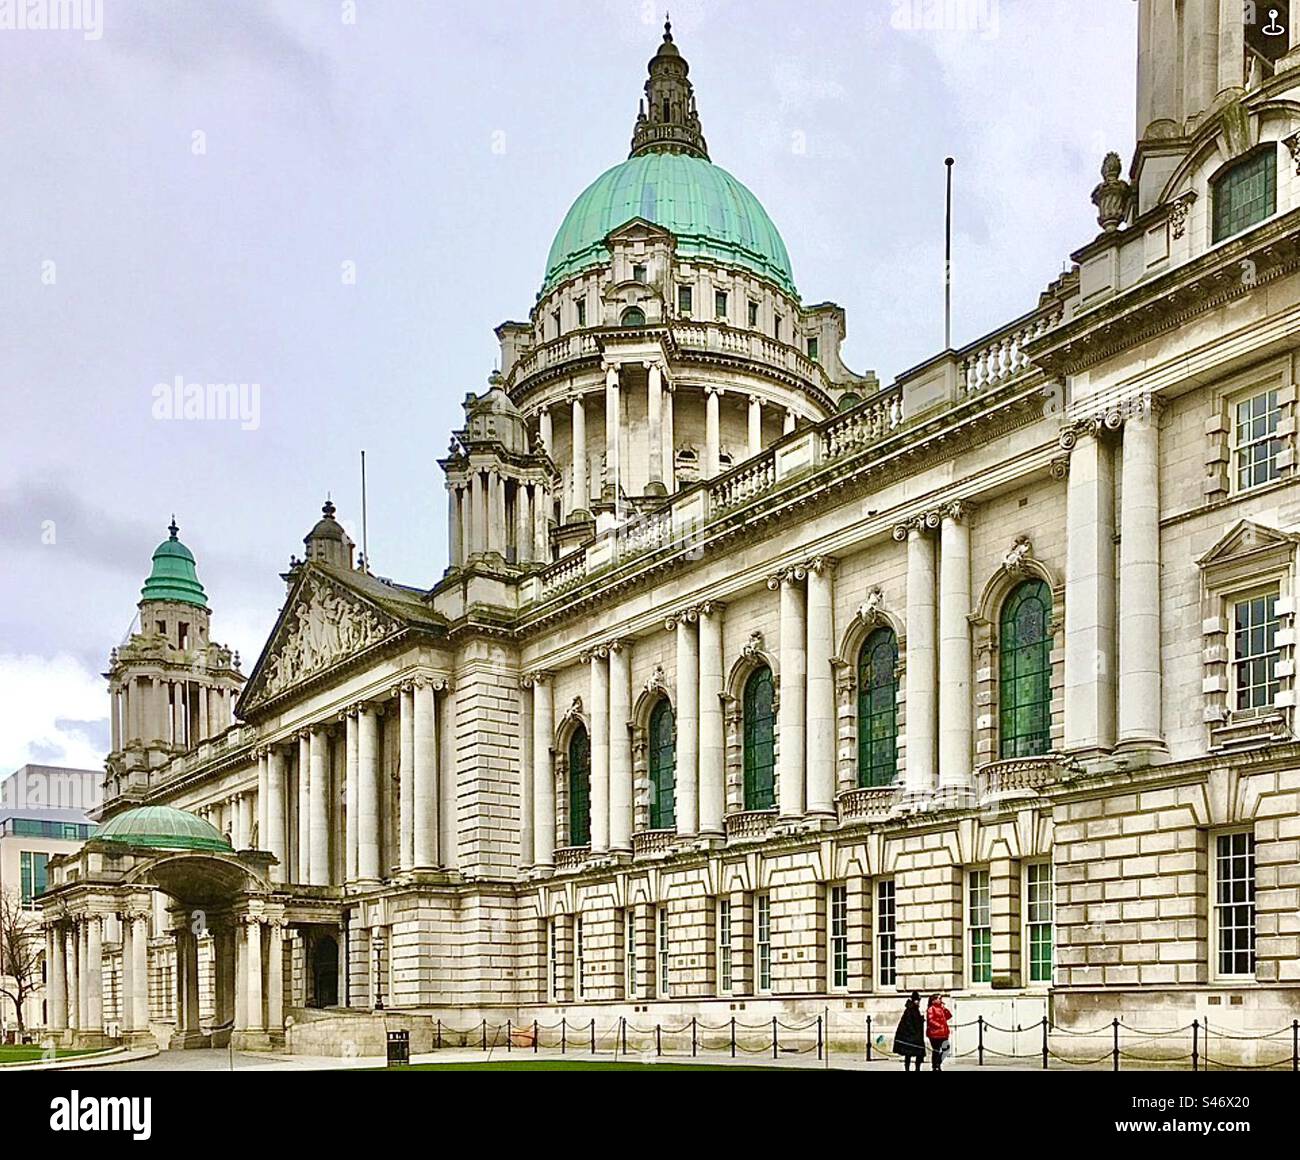 Hôtel de ville de Belfast, Irlande du Nord, un bâtiment classé achevé en 1906 et rénové en 2009. Ce bâtiment majestueux a de nombreuses caractéristiques fines à l'intérieur et à l'extérieur. Il est conçu dans le style « baroque Revival ». Banque D'Images